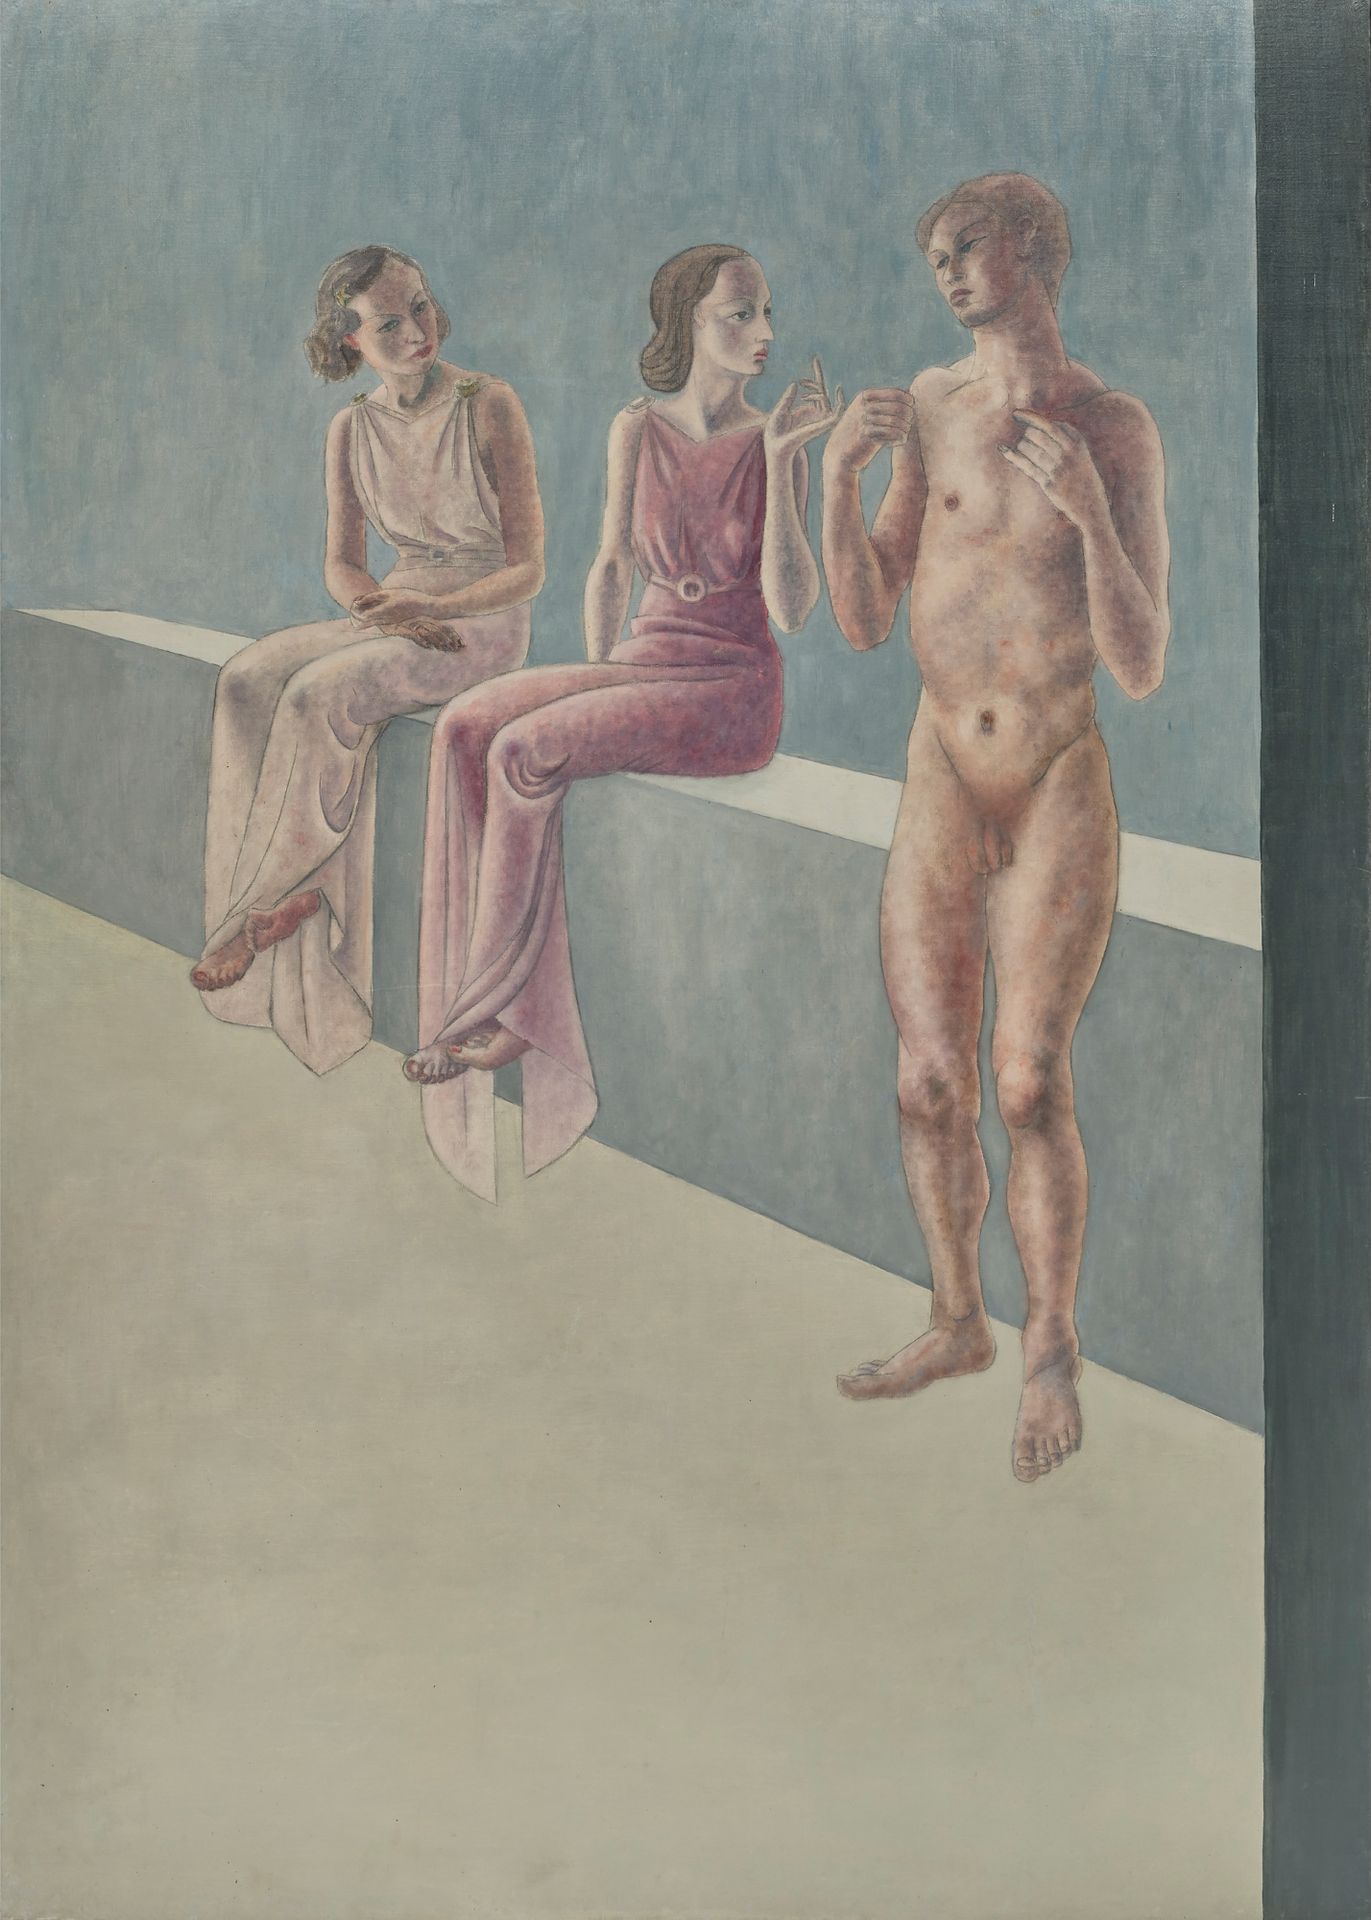 MARC DU PLANTIER (1901-1975) 两个穿着衣服的女人和一个裸体的男人
粘贴在画布上的混合技术
无签名
211 x 151 cm
出处：
&hellip;